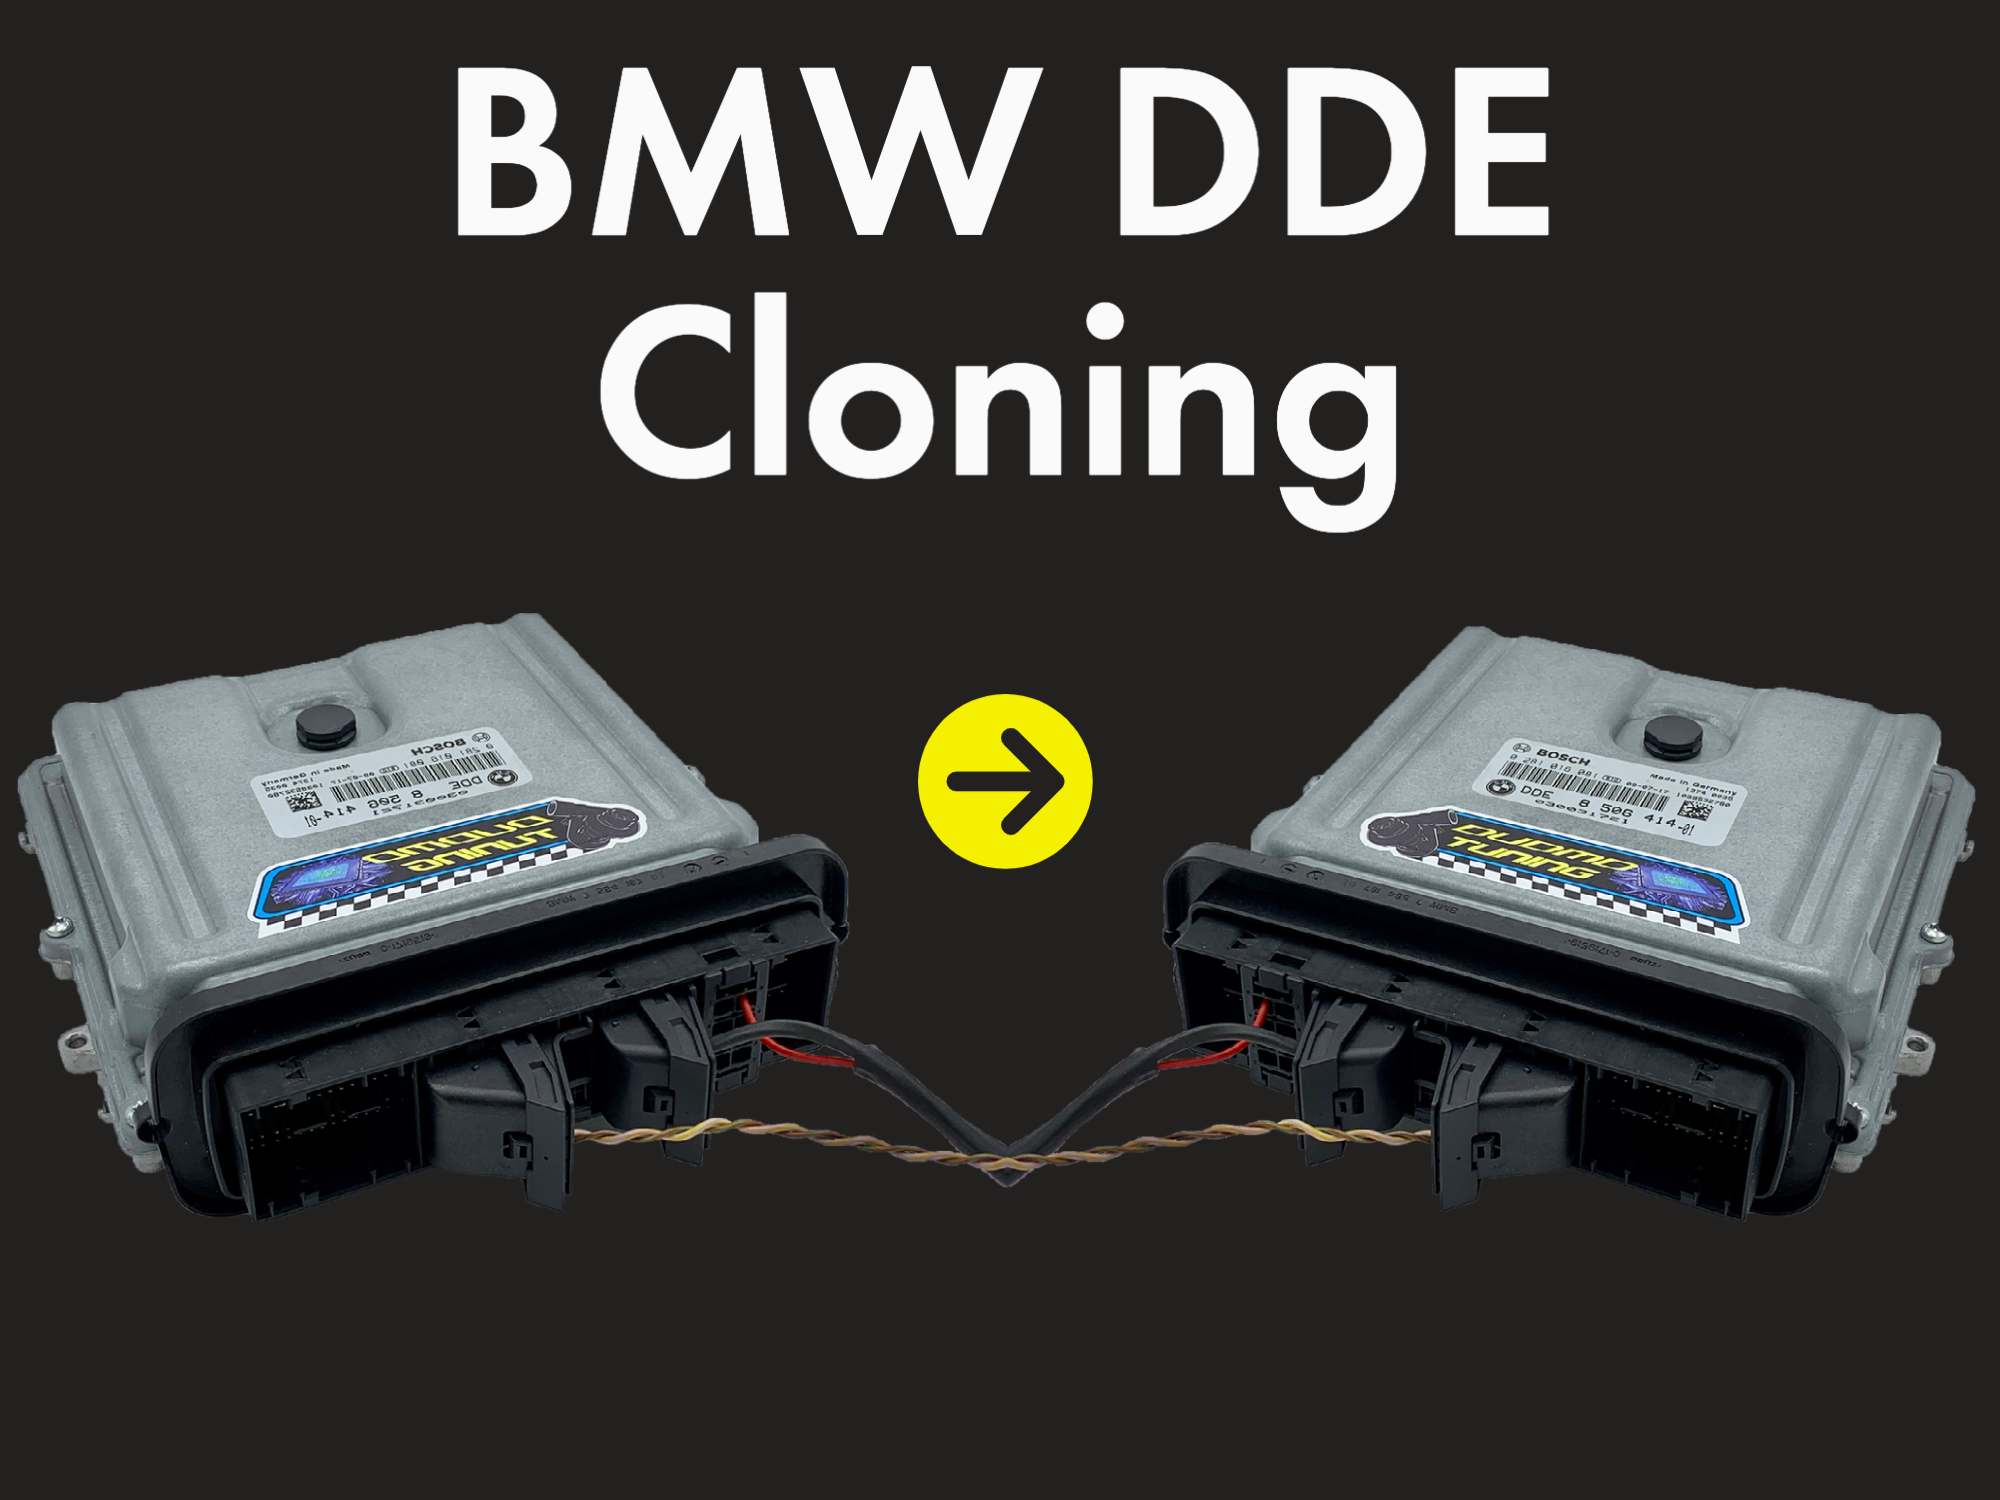 BMW DDE Cloning - ECU Cloning Service - Diesel BMW - Plug and Play